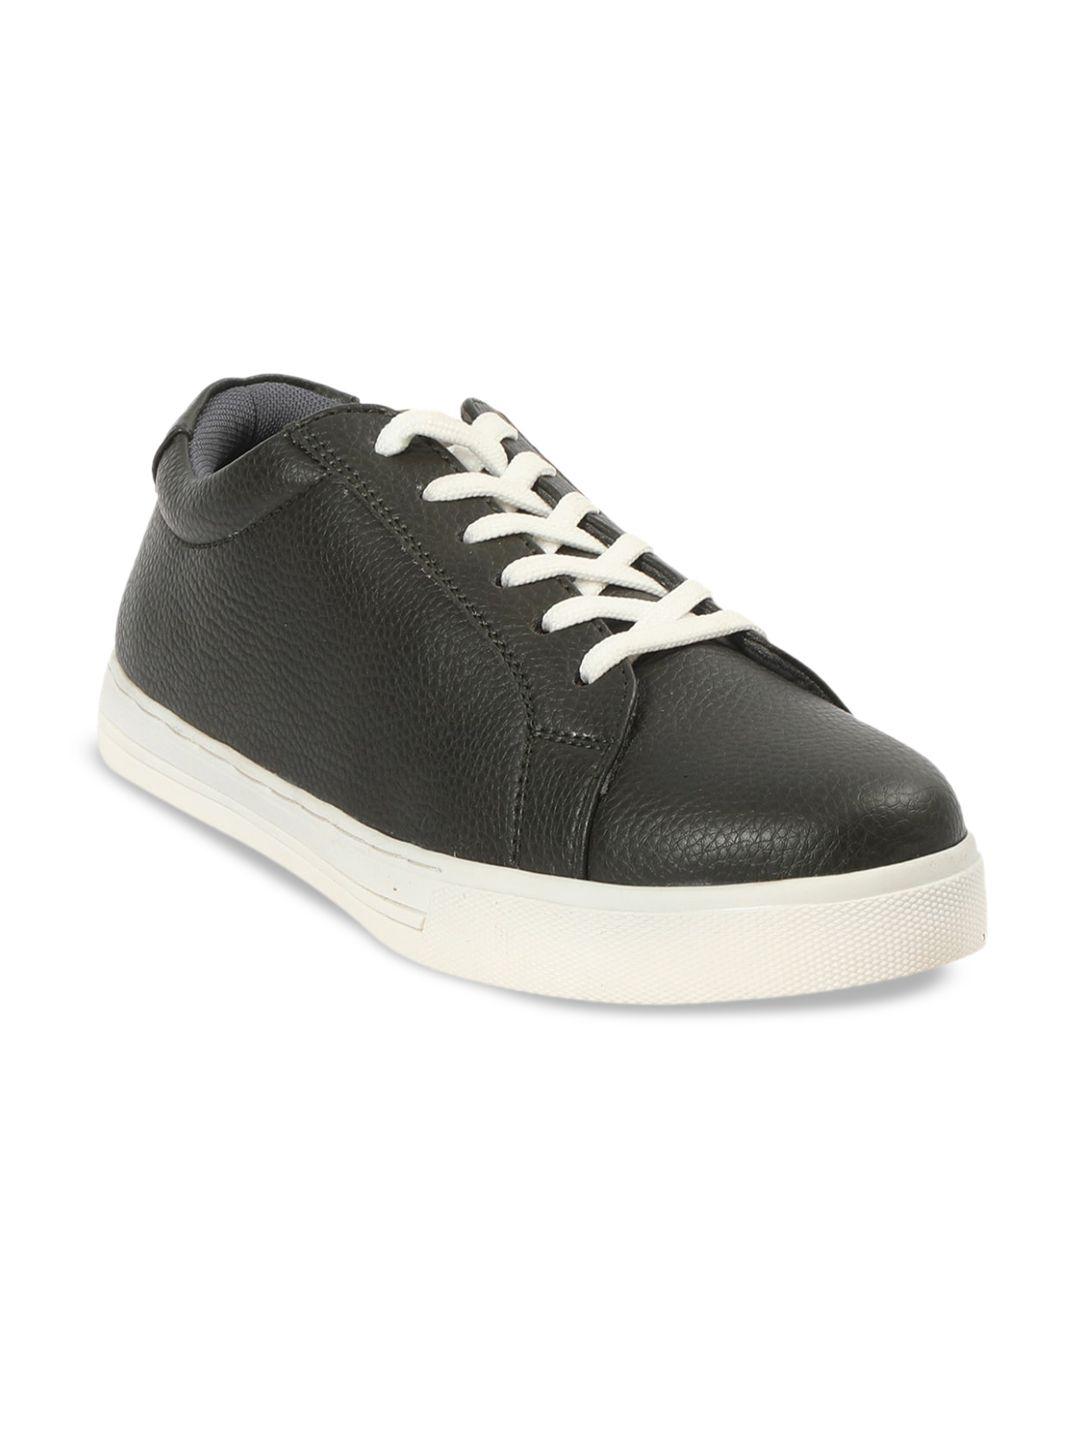 spykar-men-textured-contrast-sole-sneakers